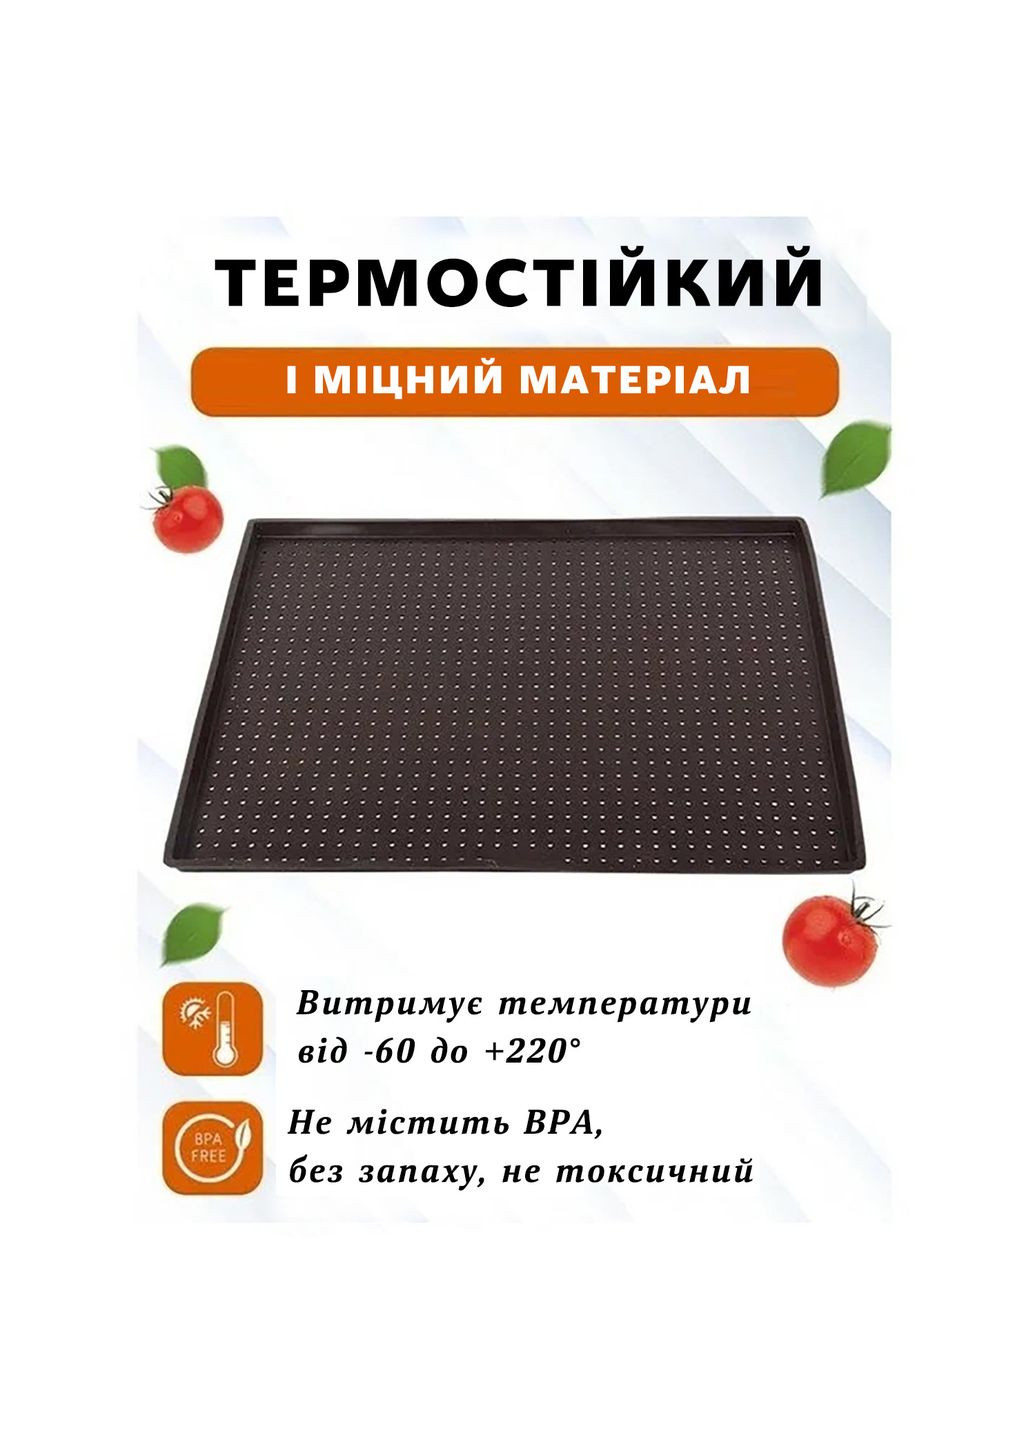 Коврик противень силиконовый для запекания перфорированный прямоугольный многоразовый антипригарный 39х30х1 см Kitchen Master (285792064)